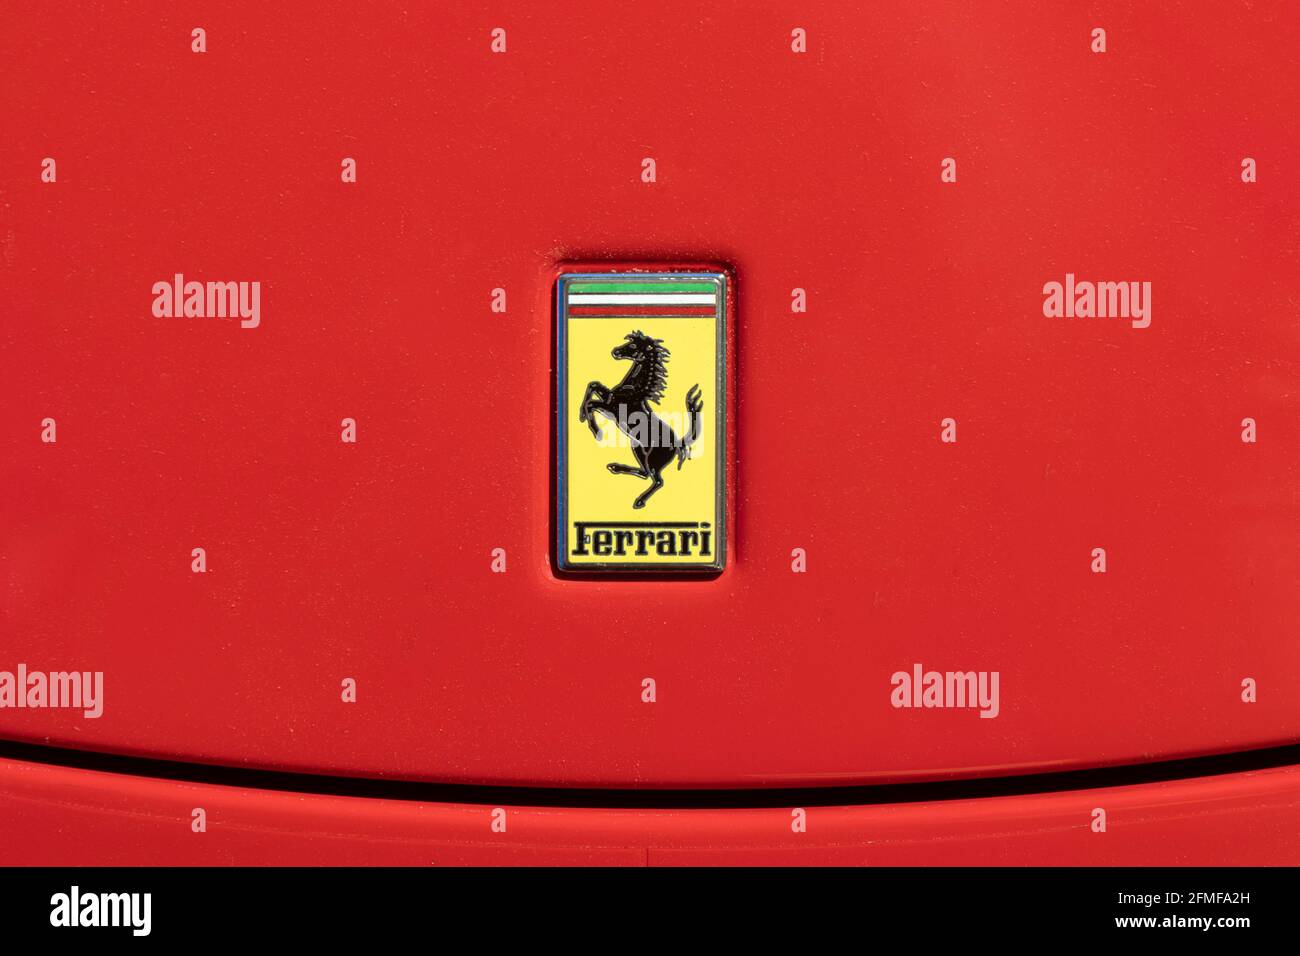 BARCELONE, ESPAGNE-MAI 8, 2021: Le logo Ferrari Cavallino Rampante (« cheval de prancement ») sur le capot de la vraie voiture Banque D'Images